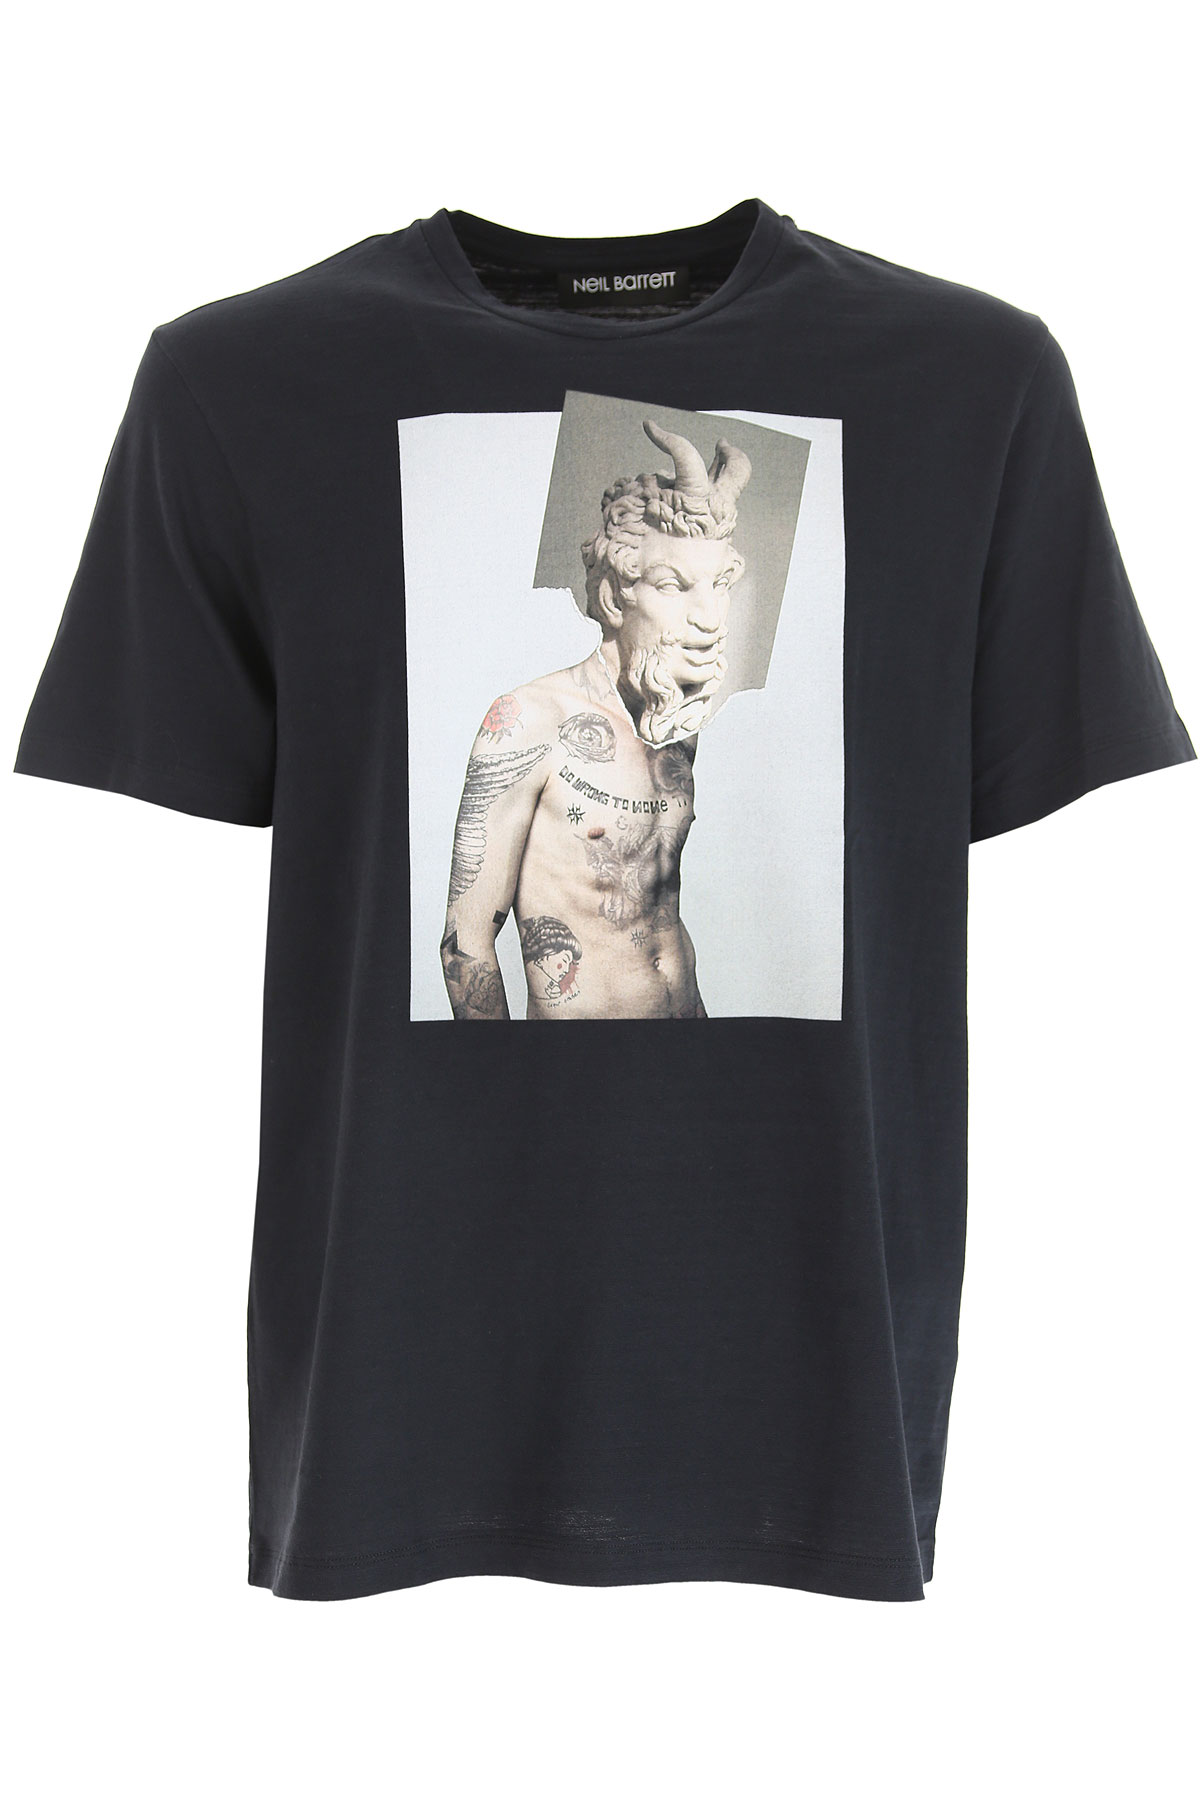 Neil Barrett T-shirt Homme, Marine, Coton, 2017, L M S XL XS XXL